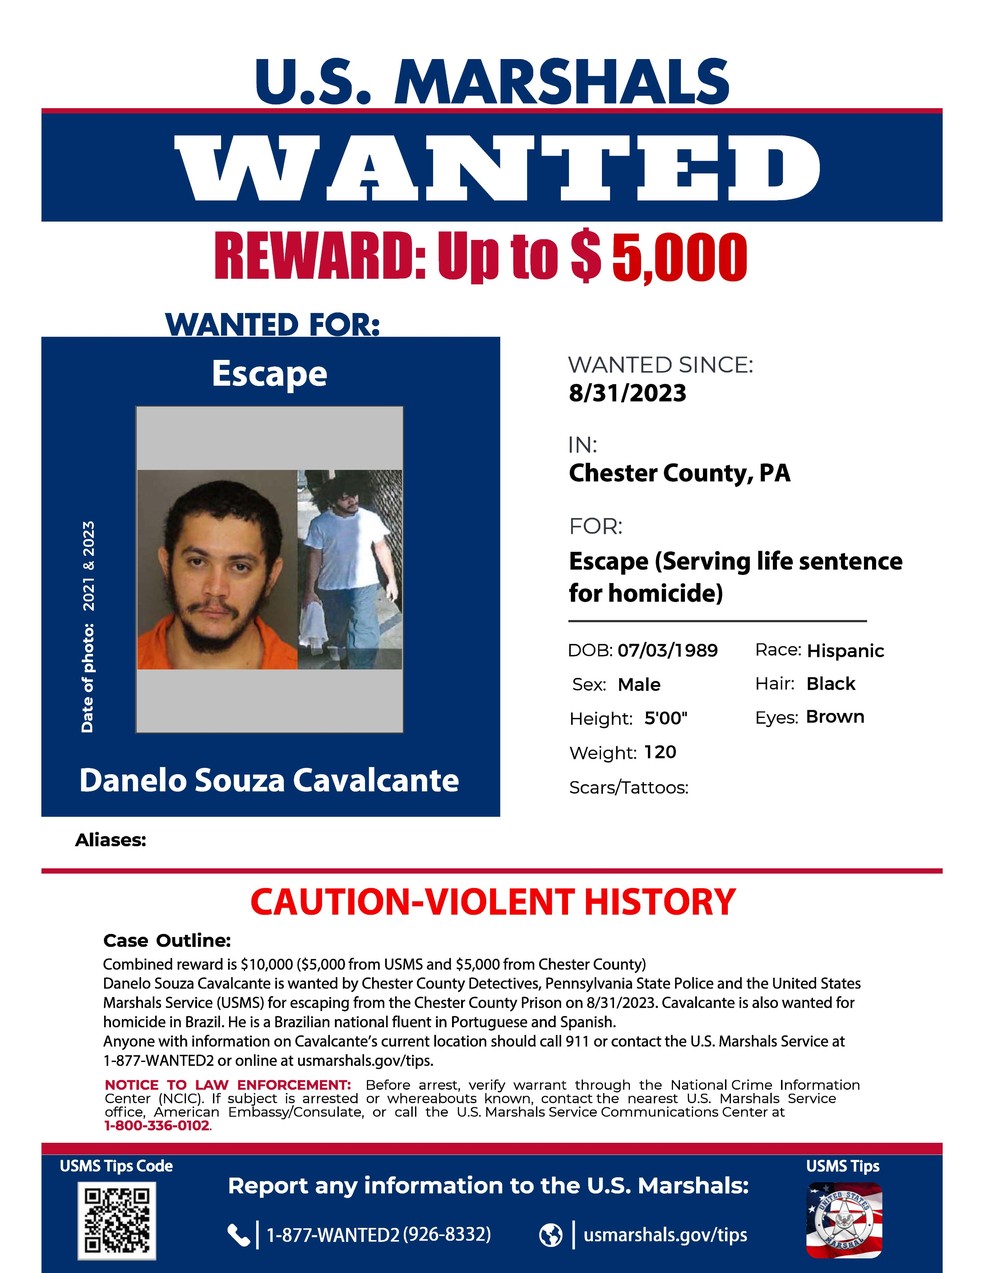 Governo norte-americano divulgou cartaz indicando recompensa por informações por brasileiro fugitivo — Foto: Chester County Government